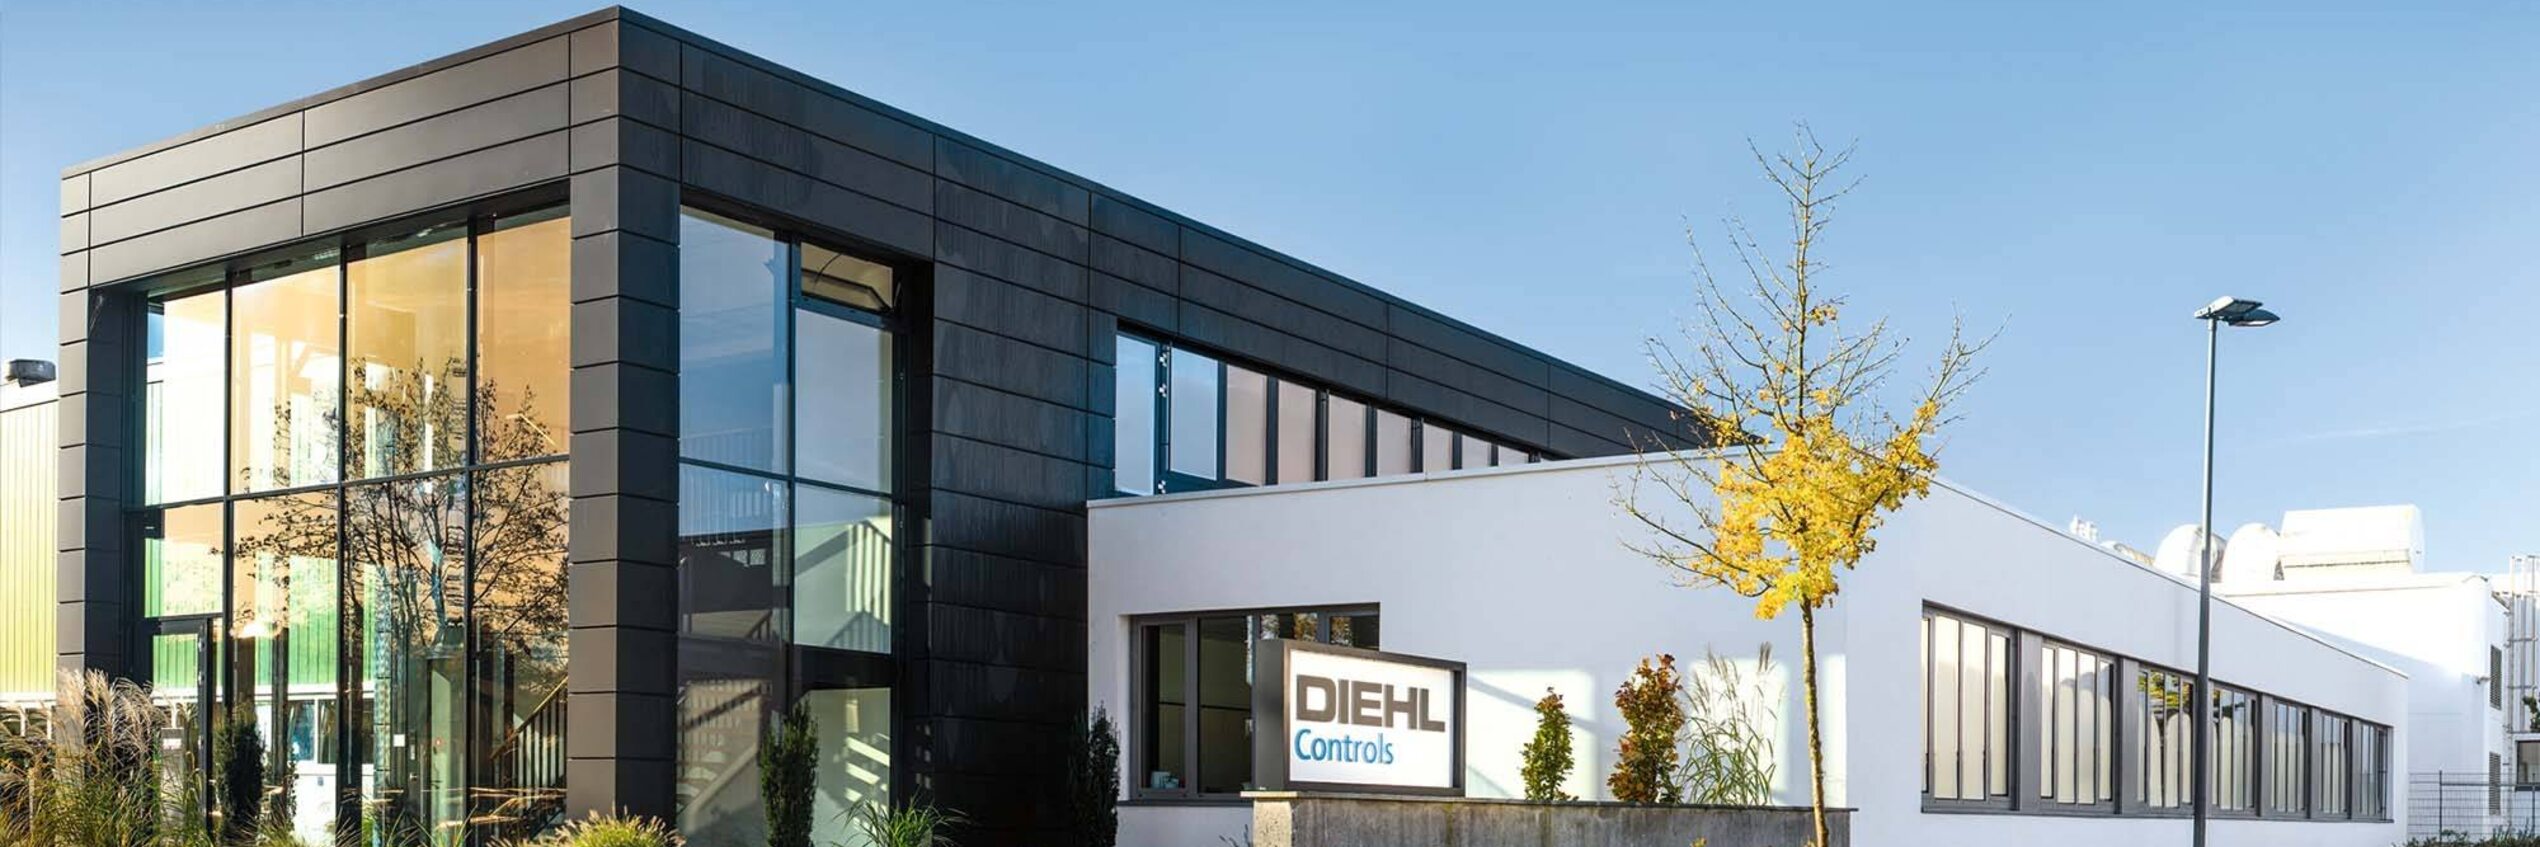 Main building of Diehl Controls in Wangen